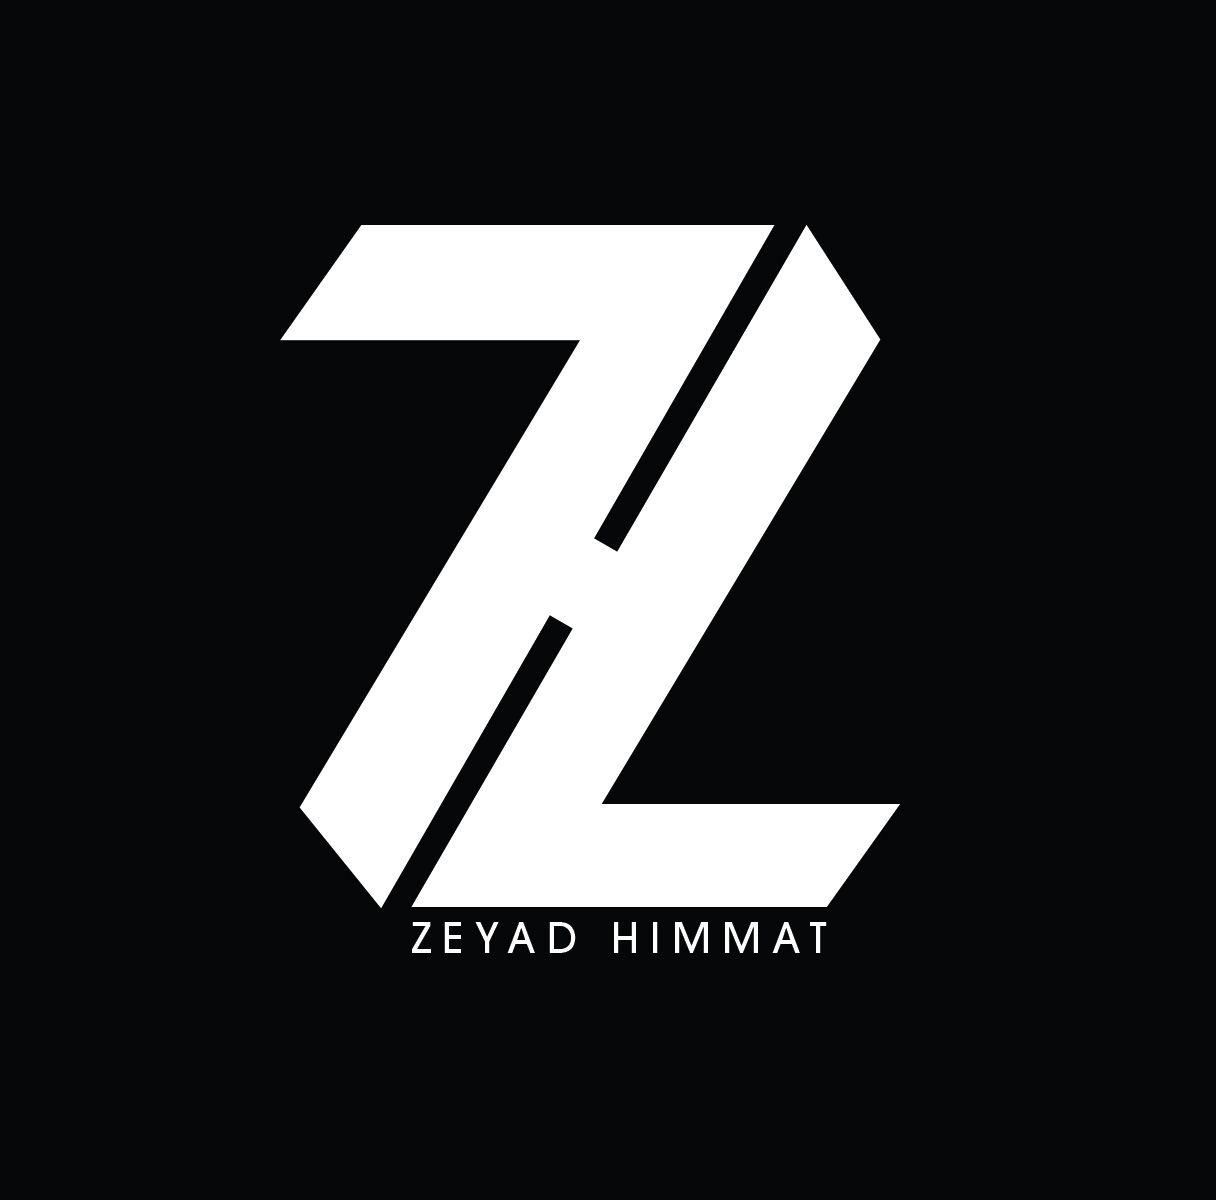 ZH Logo - Lettermark Logo